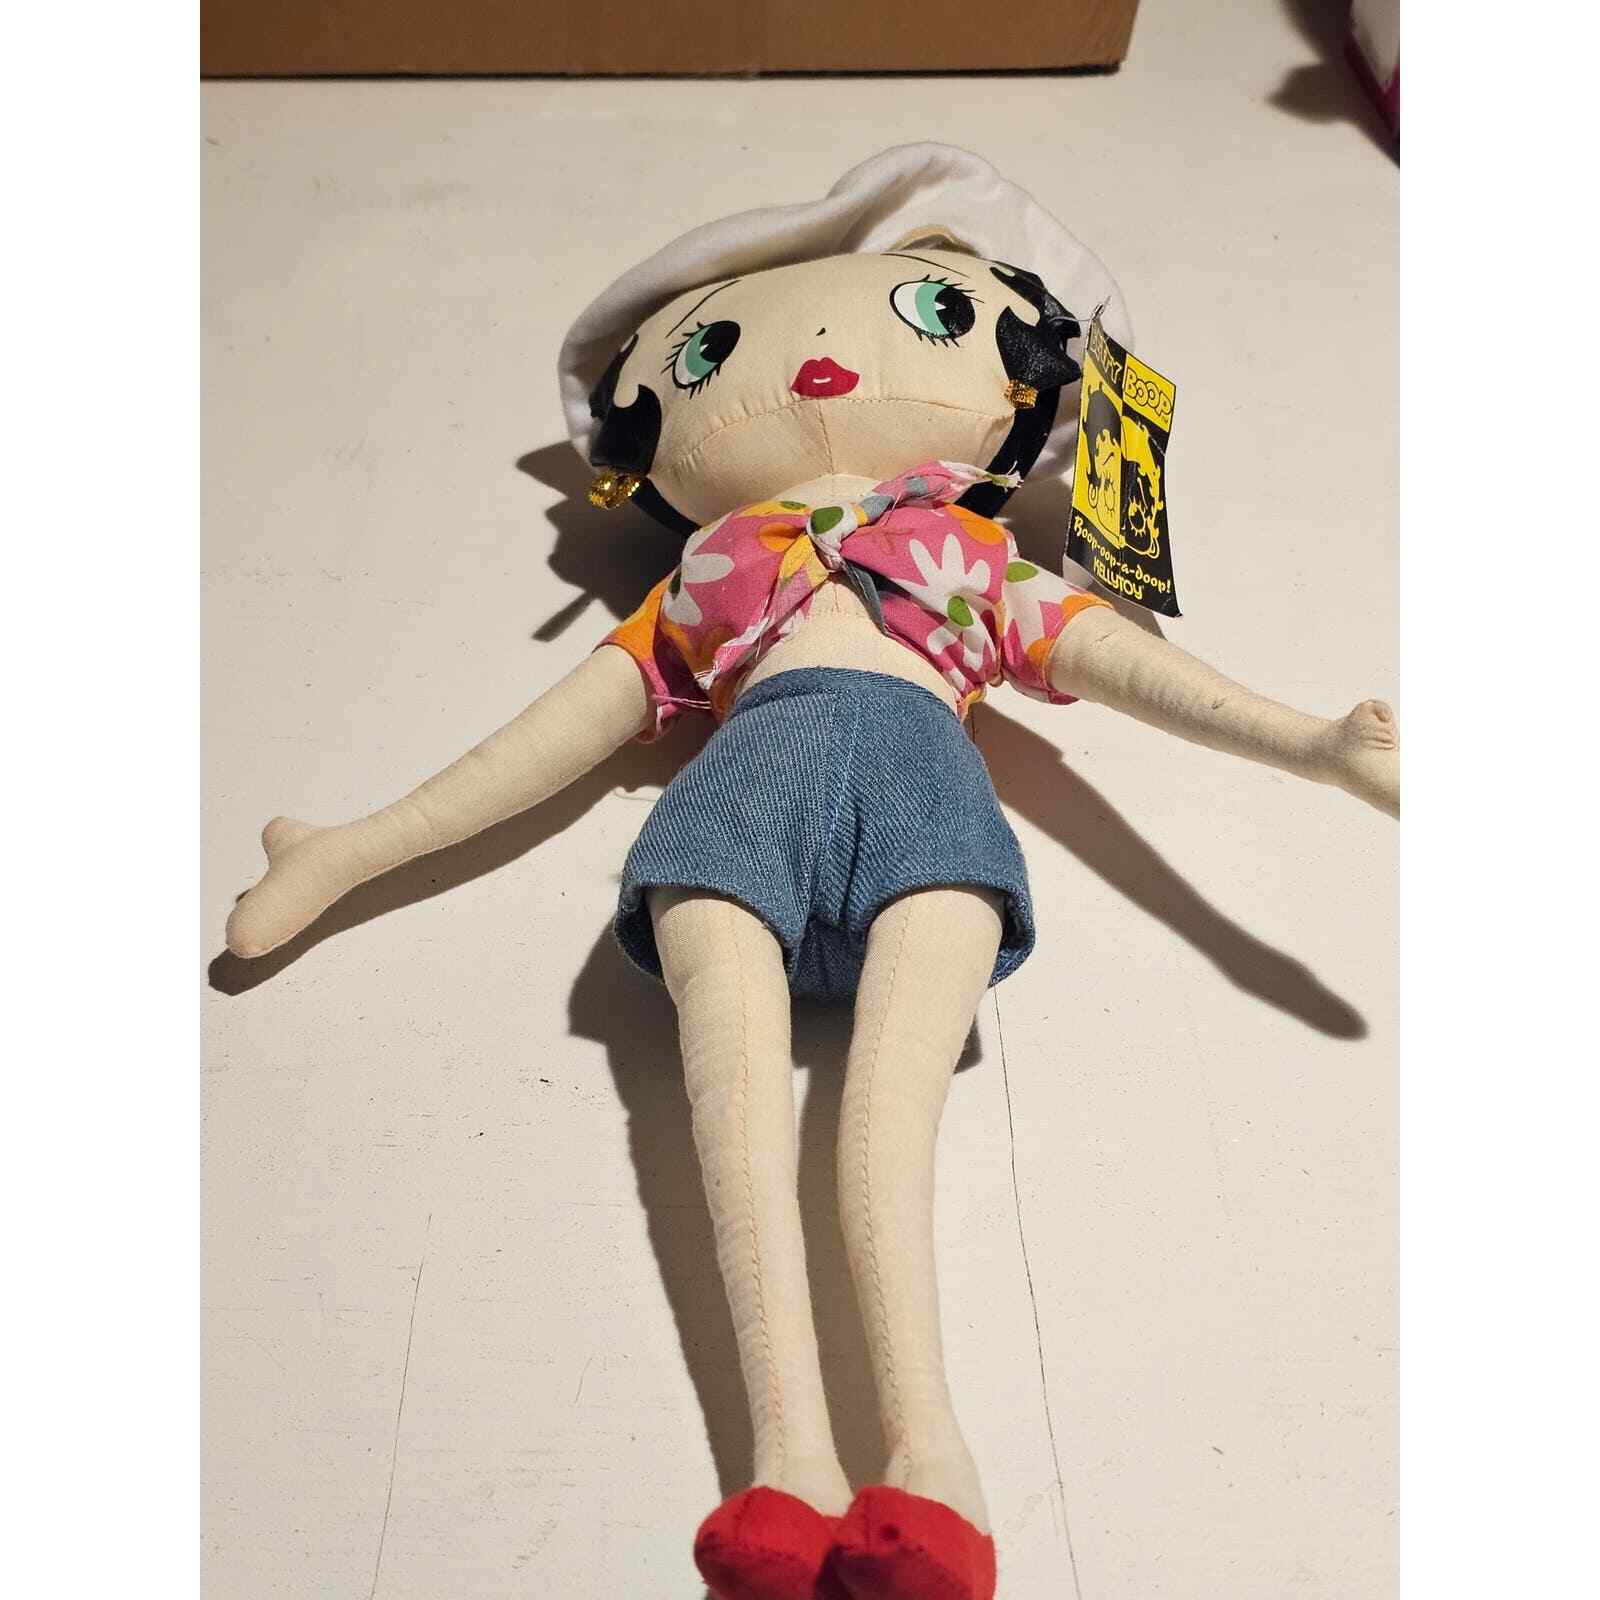  Vintage KellyToy Betty Boop Plush Dolls Denim 2002 